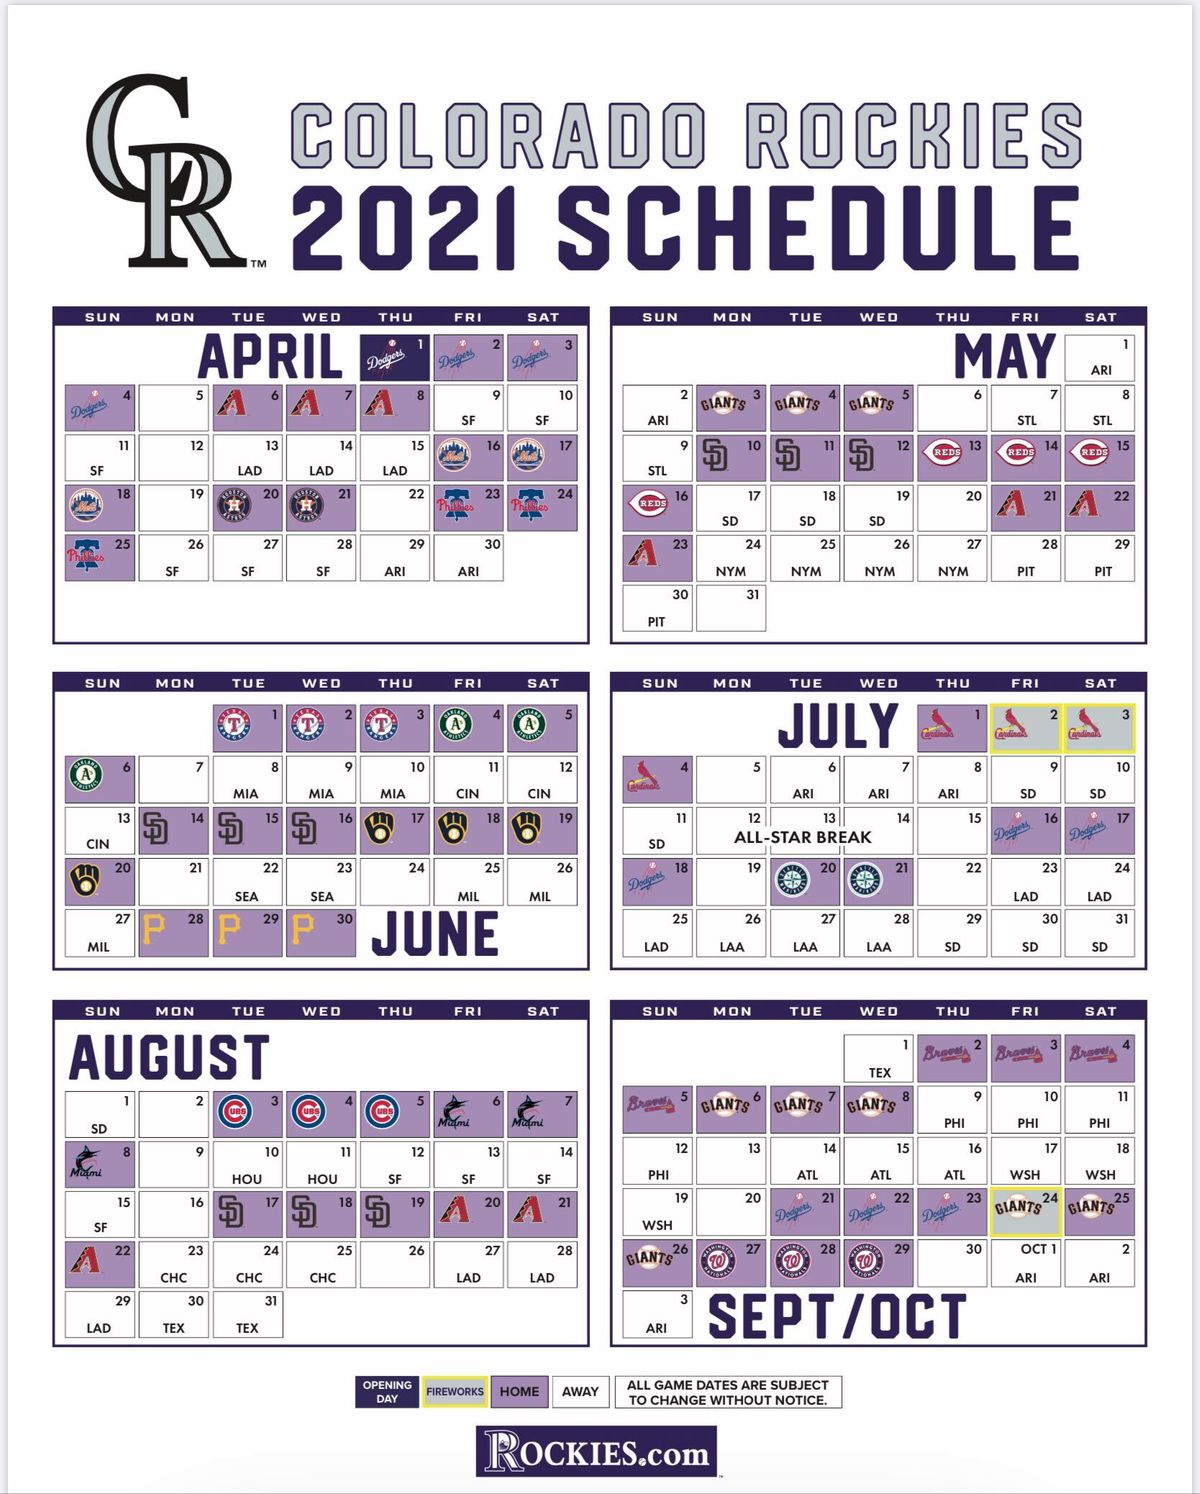 Rockies 2021 schedule